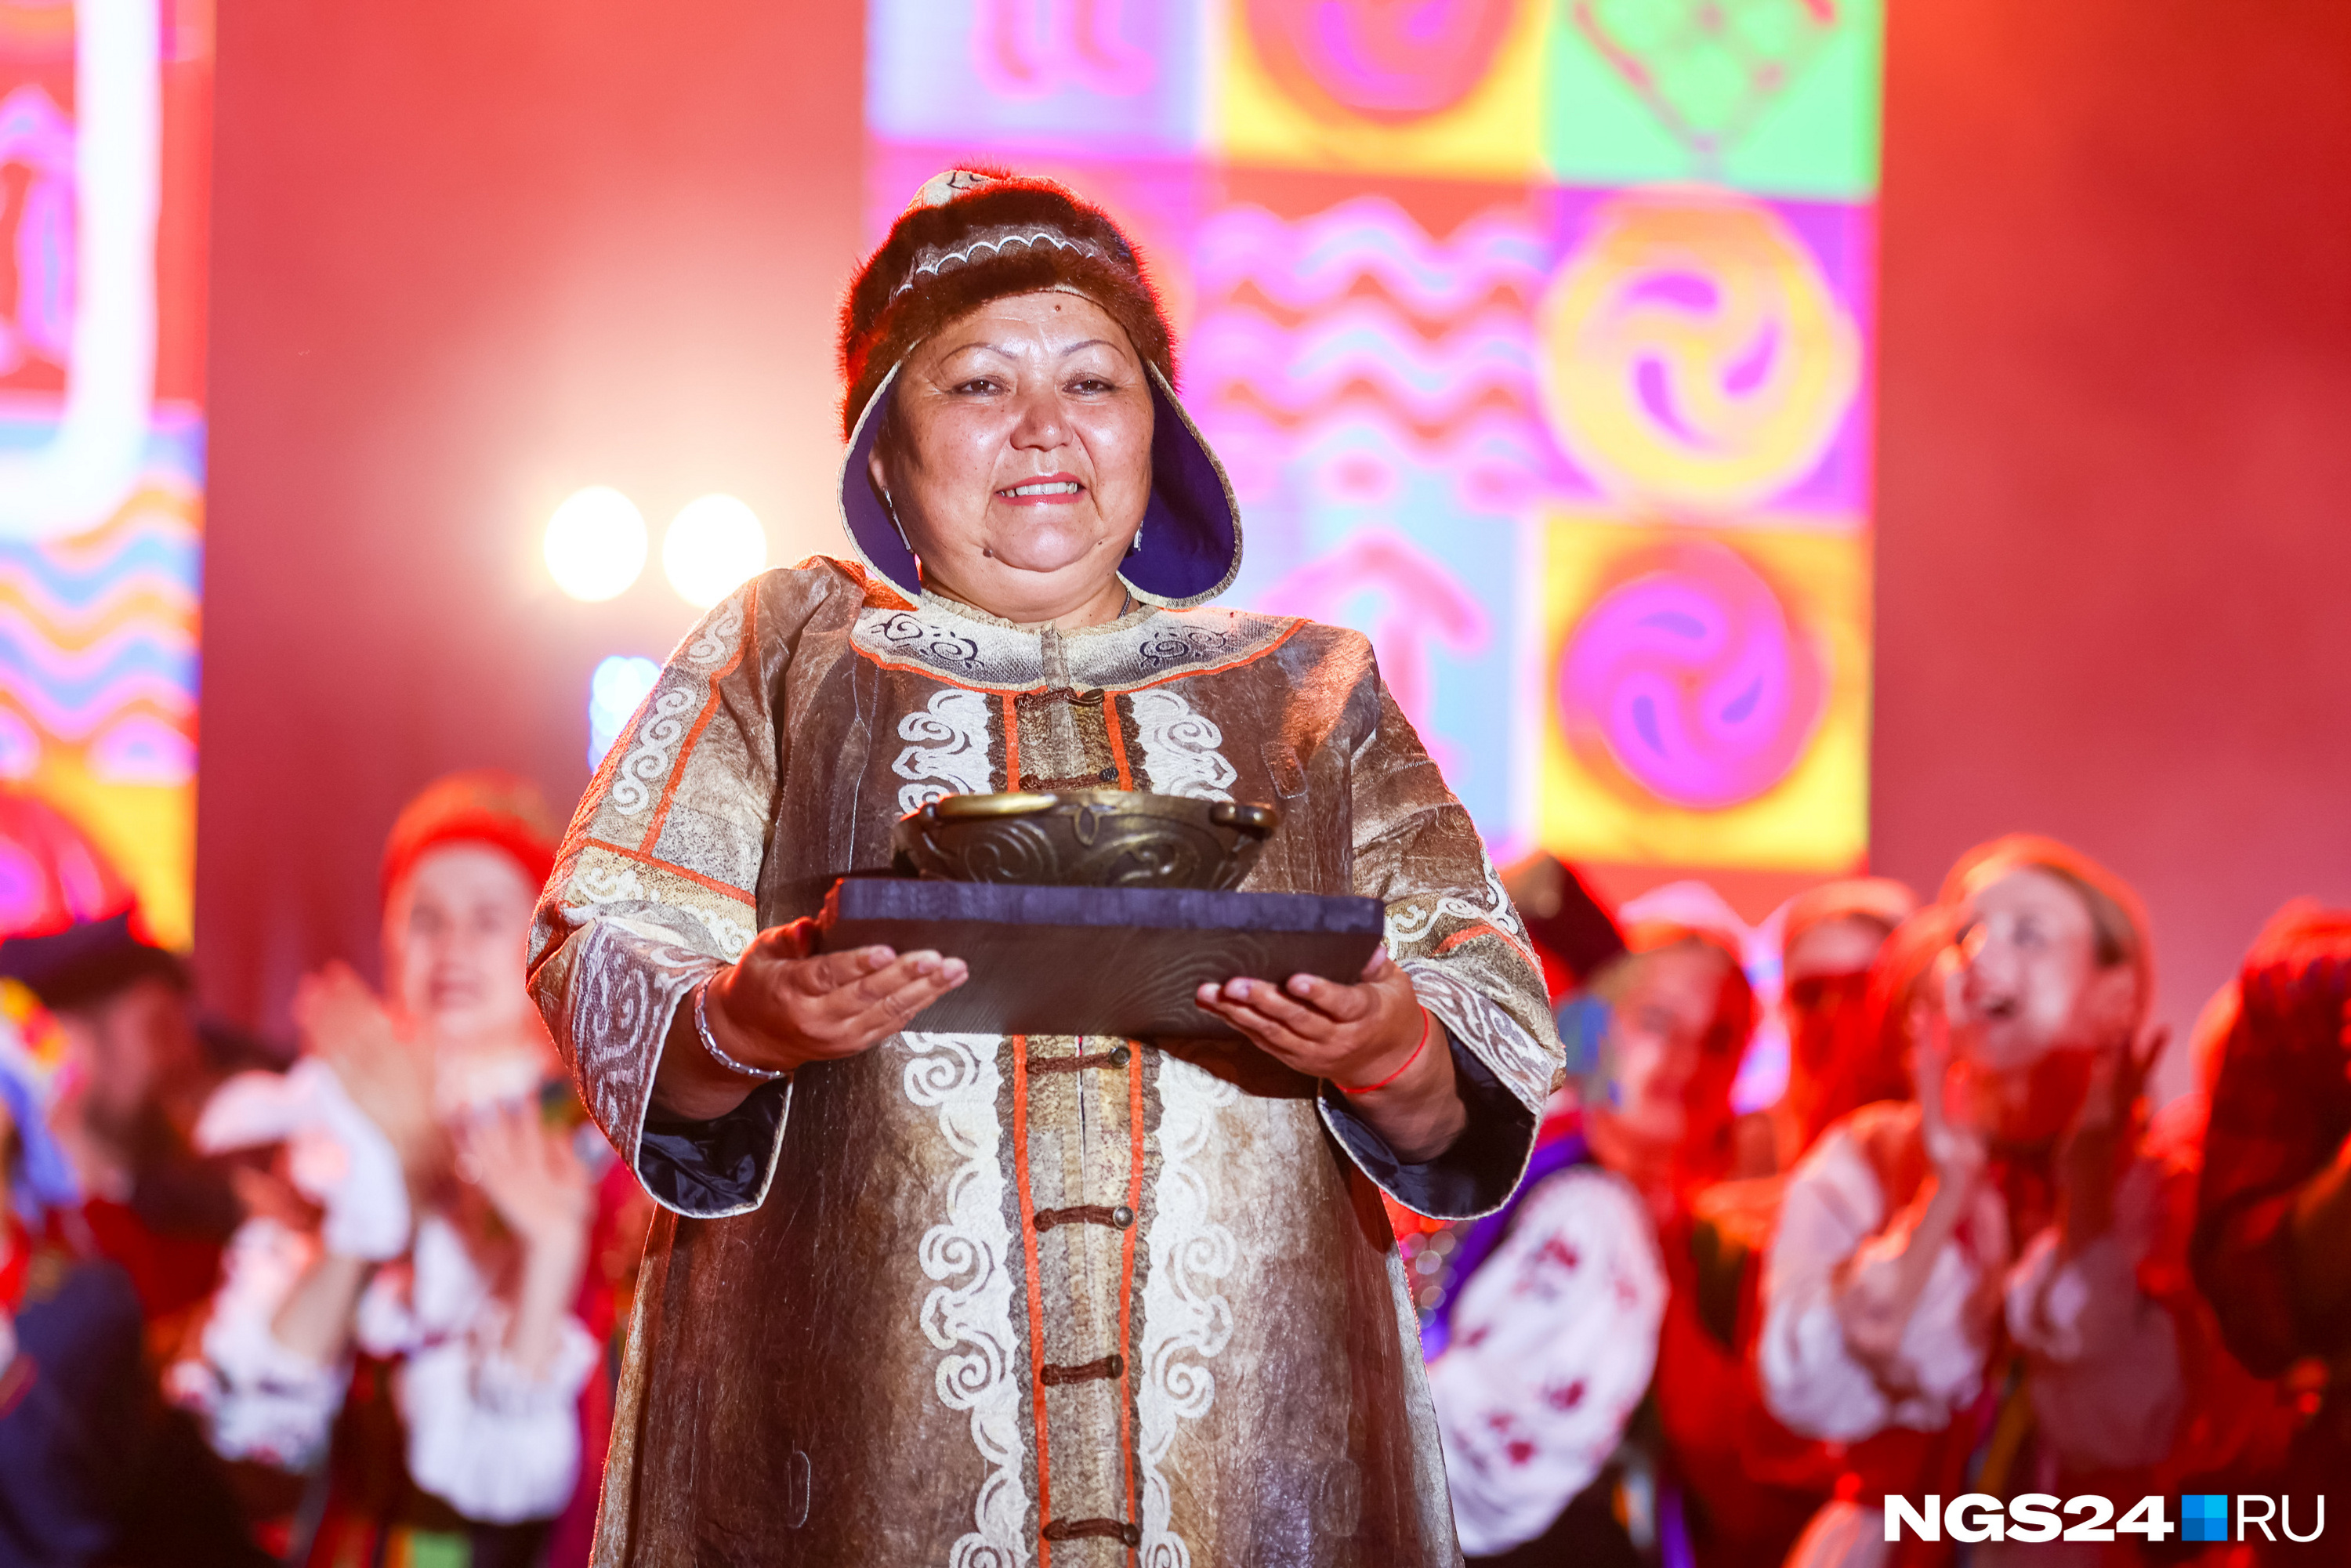 Валентина Бельды из Хабаровского края делает уникальную одежду и получила за это Гран-при